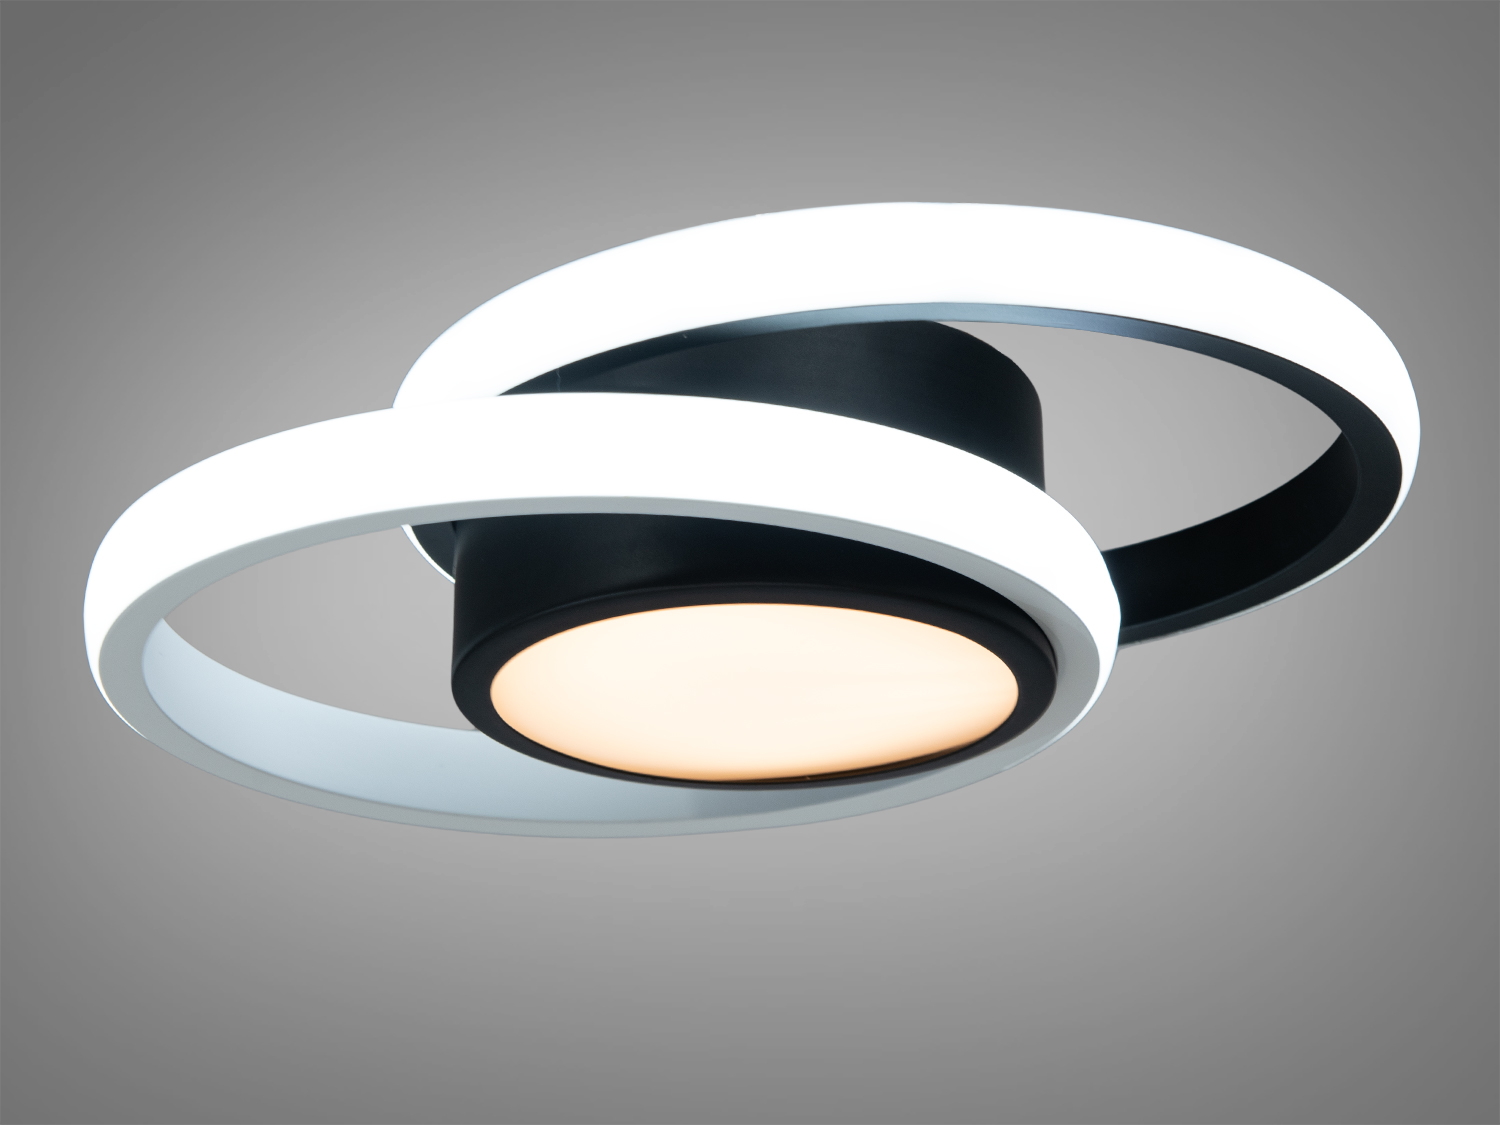 Стильний LED світильник у коридор має сучасний вигляд та передові функції. Застосовується також в кухню, ванну кімнату, передпокій, спальню, дитячу, тому що відсутні елементи, що б'ються.
Конструкція світильника має плавні органічні кільця, що створюють візуально захоплюючий об'єкт, основа світильника виконана в глибокому чорному кольорі з матовою обробкою, що контрастує з білими силіконовими розсіювачами.
Силіконовий розсіювач не тільки забезпечує рівномірний розподіл світла, а й служить естетичній функції, надаючи світильнику сучасного та стильного вигляду. Розсіювач спроектований таким чином, щоб максимально ефективно розподіляти світло, створюючи комфортні умови для очей без різких тіней та сліпучих відблисків.
Функція регулювання колірної температури з вимикача надає користувачеві можливість вибору між теплим, нейтральним або холодним білим світлом.
Використовується в приміщеннях у різних стилях інтер'єру, таких як модерн, мінімалізм, hi-tech, класичний, а також може стати акцентом у скандинавському або індустріальному дизайні.
Світлодіодна технологія, використана в цьому світильнику, забезпечує високу енергоефективність та тривалий термін служби, що знижує витрати на електроенергію та обслуговування. Крім того, він є екологічно безпечним вибором, оскільки світлодіоди не містять шкідливих речовин, таких як ртуть та не випромінюють ультрафіолетове світло.
Кріпиться до стелі будь-якого типу універсальним кріпленням на монтажну планку.